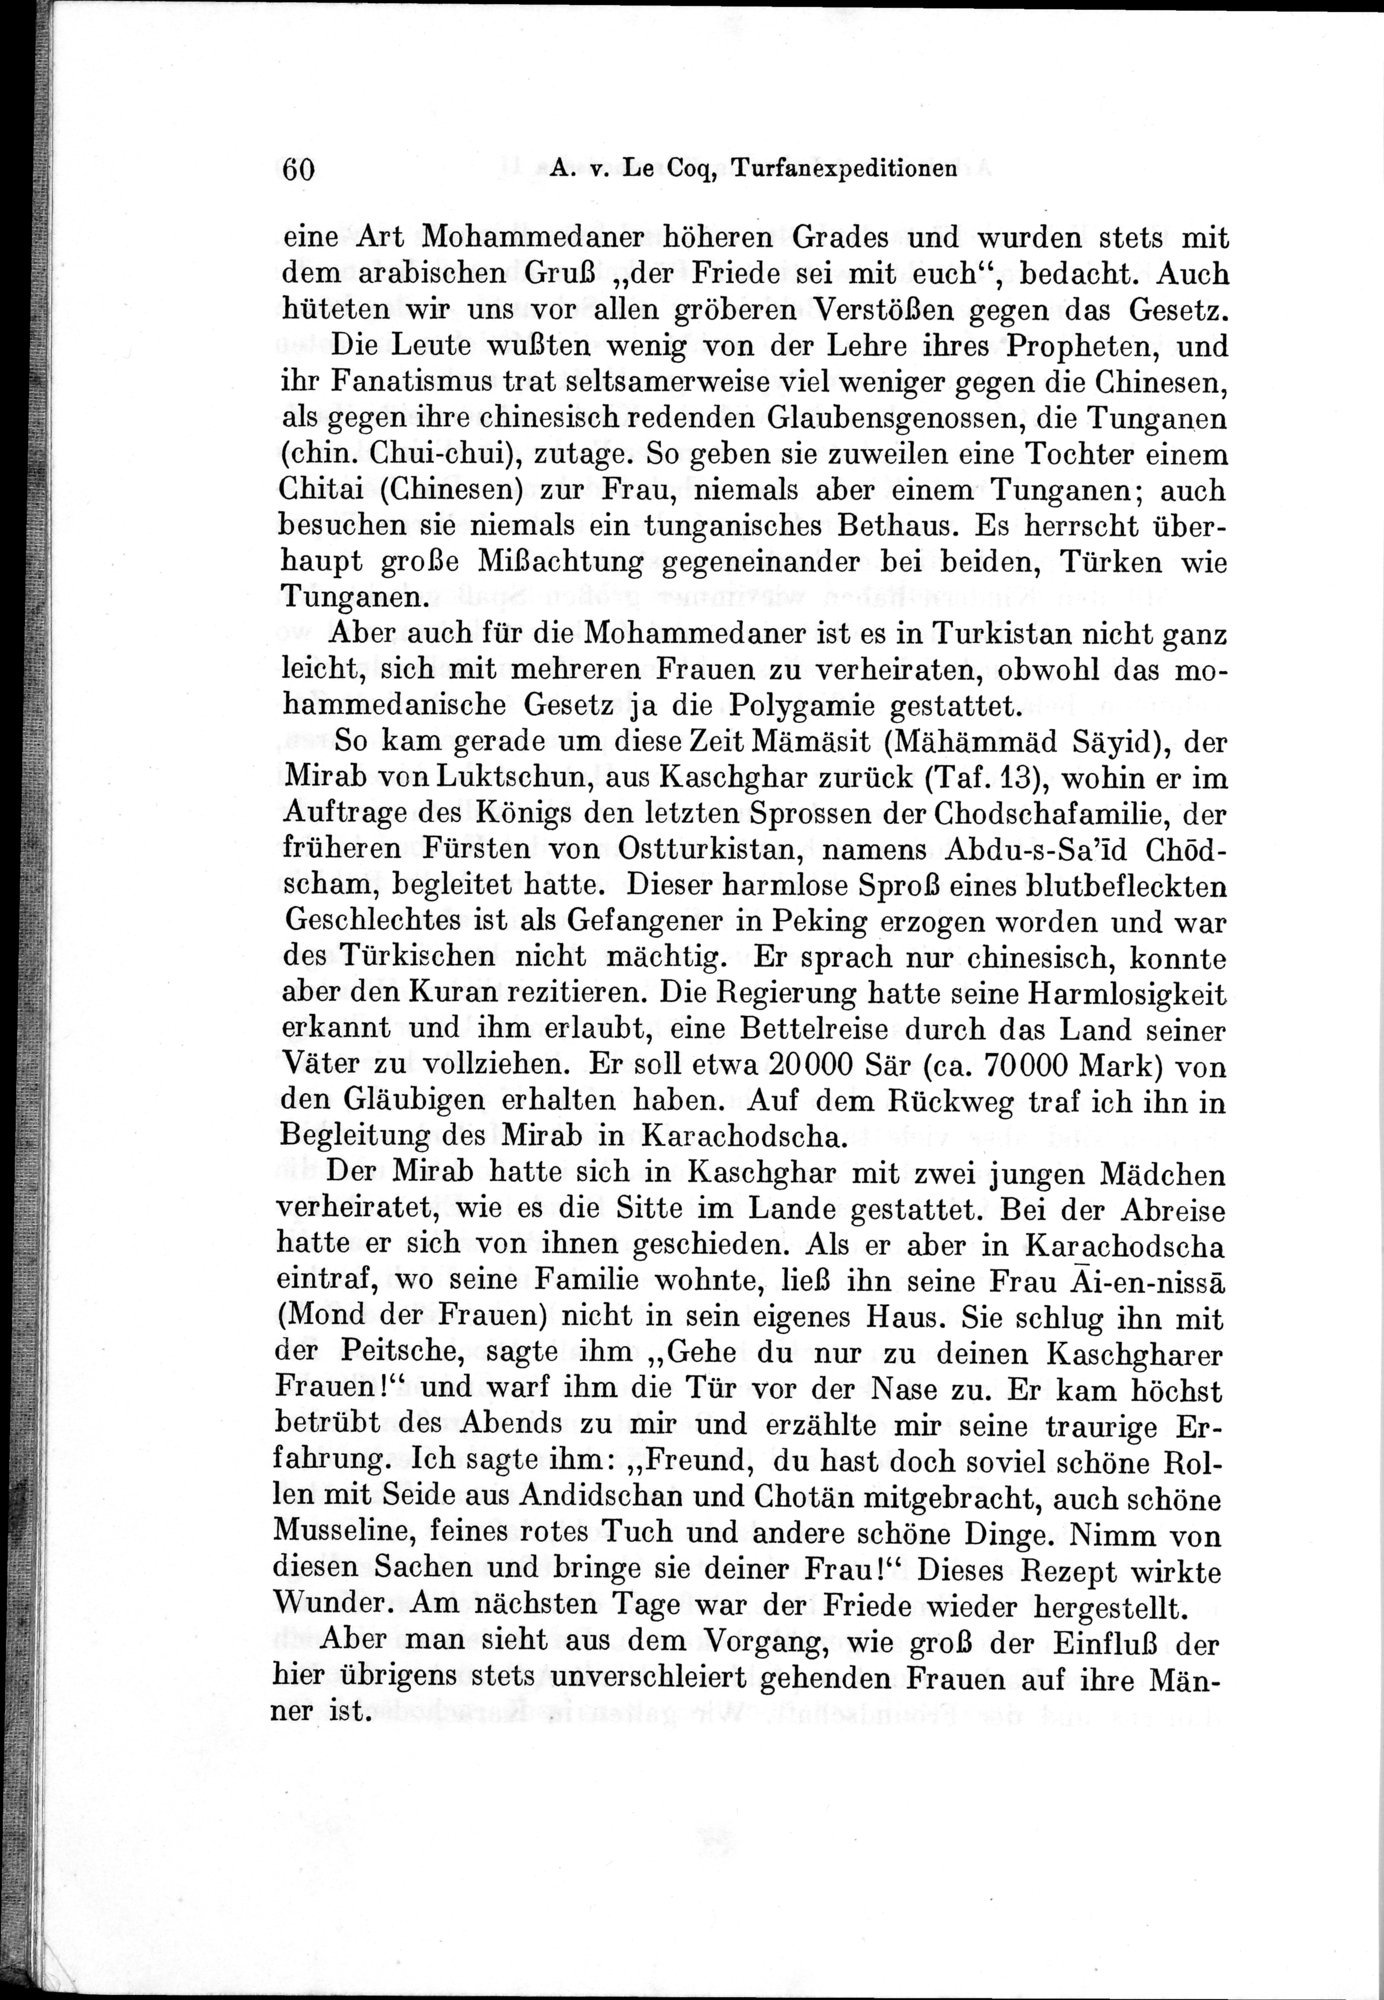 Auf Hellas Spuren in Ostturkistan : vol.1 / Page 92 (Grayscale High Resolution Image)